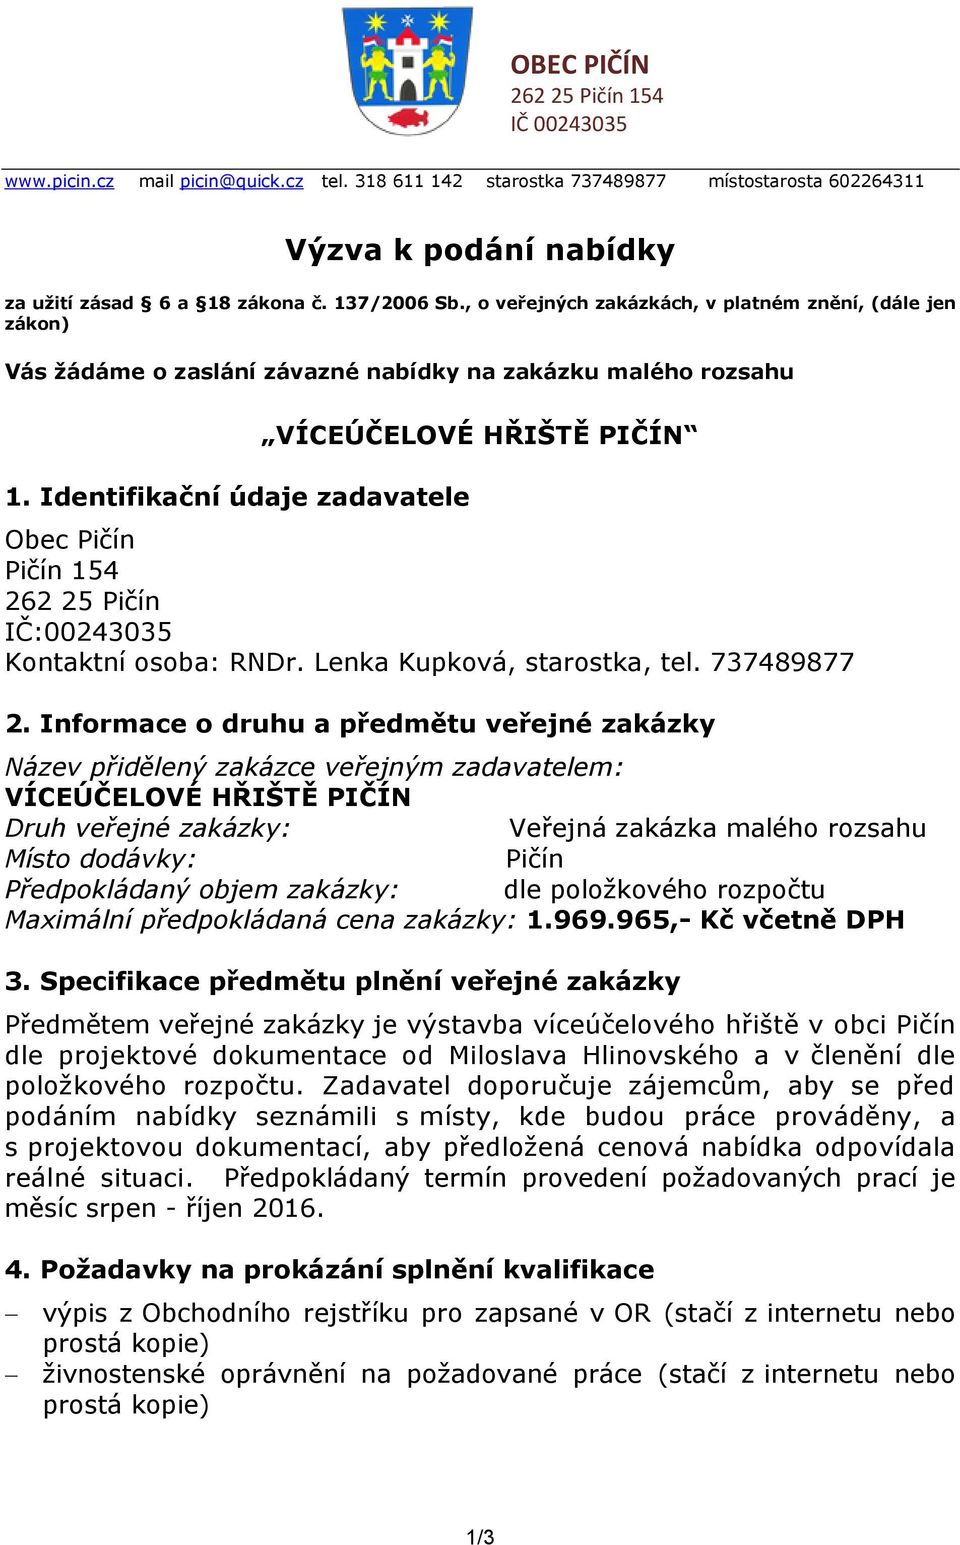 Identifikační údaje zadavatele VÍCEÚČELOVÉ HŘIŠTĚ PIČÍN Obec Pičín Pičín 154 262 25 Pičín IČ:00243035 Kontaktní osoba: RNDr. Lenka Kupková, starostka, tel. 737489877 2.